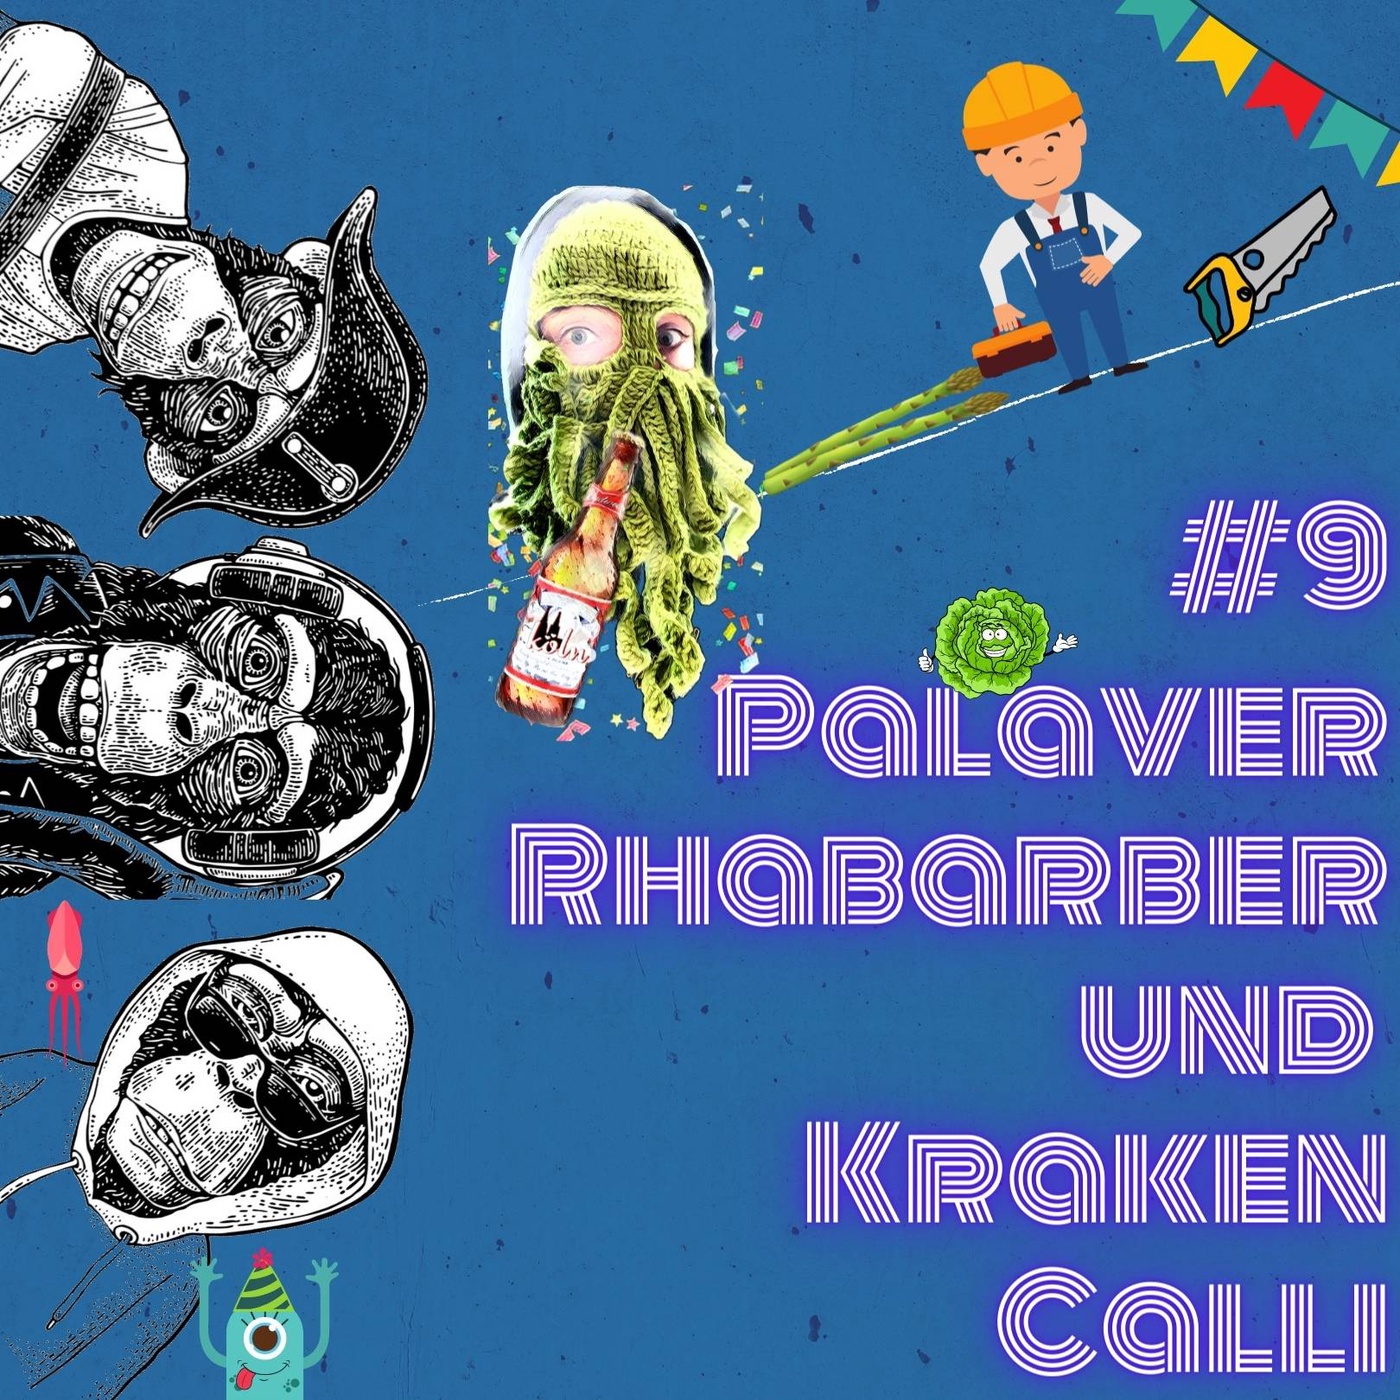 #9 Palaver Rhabarber und Kraken Calli